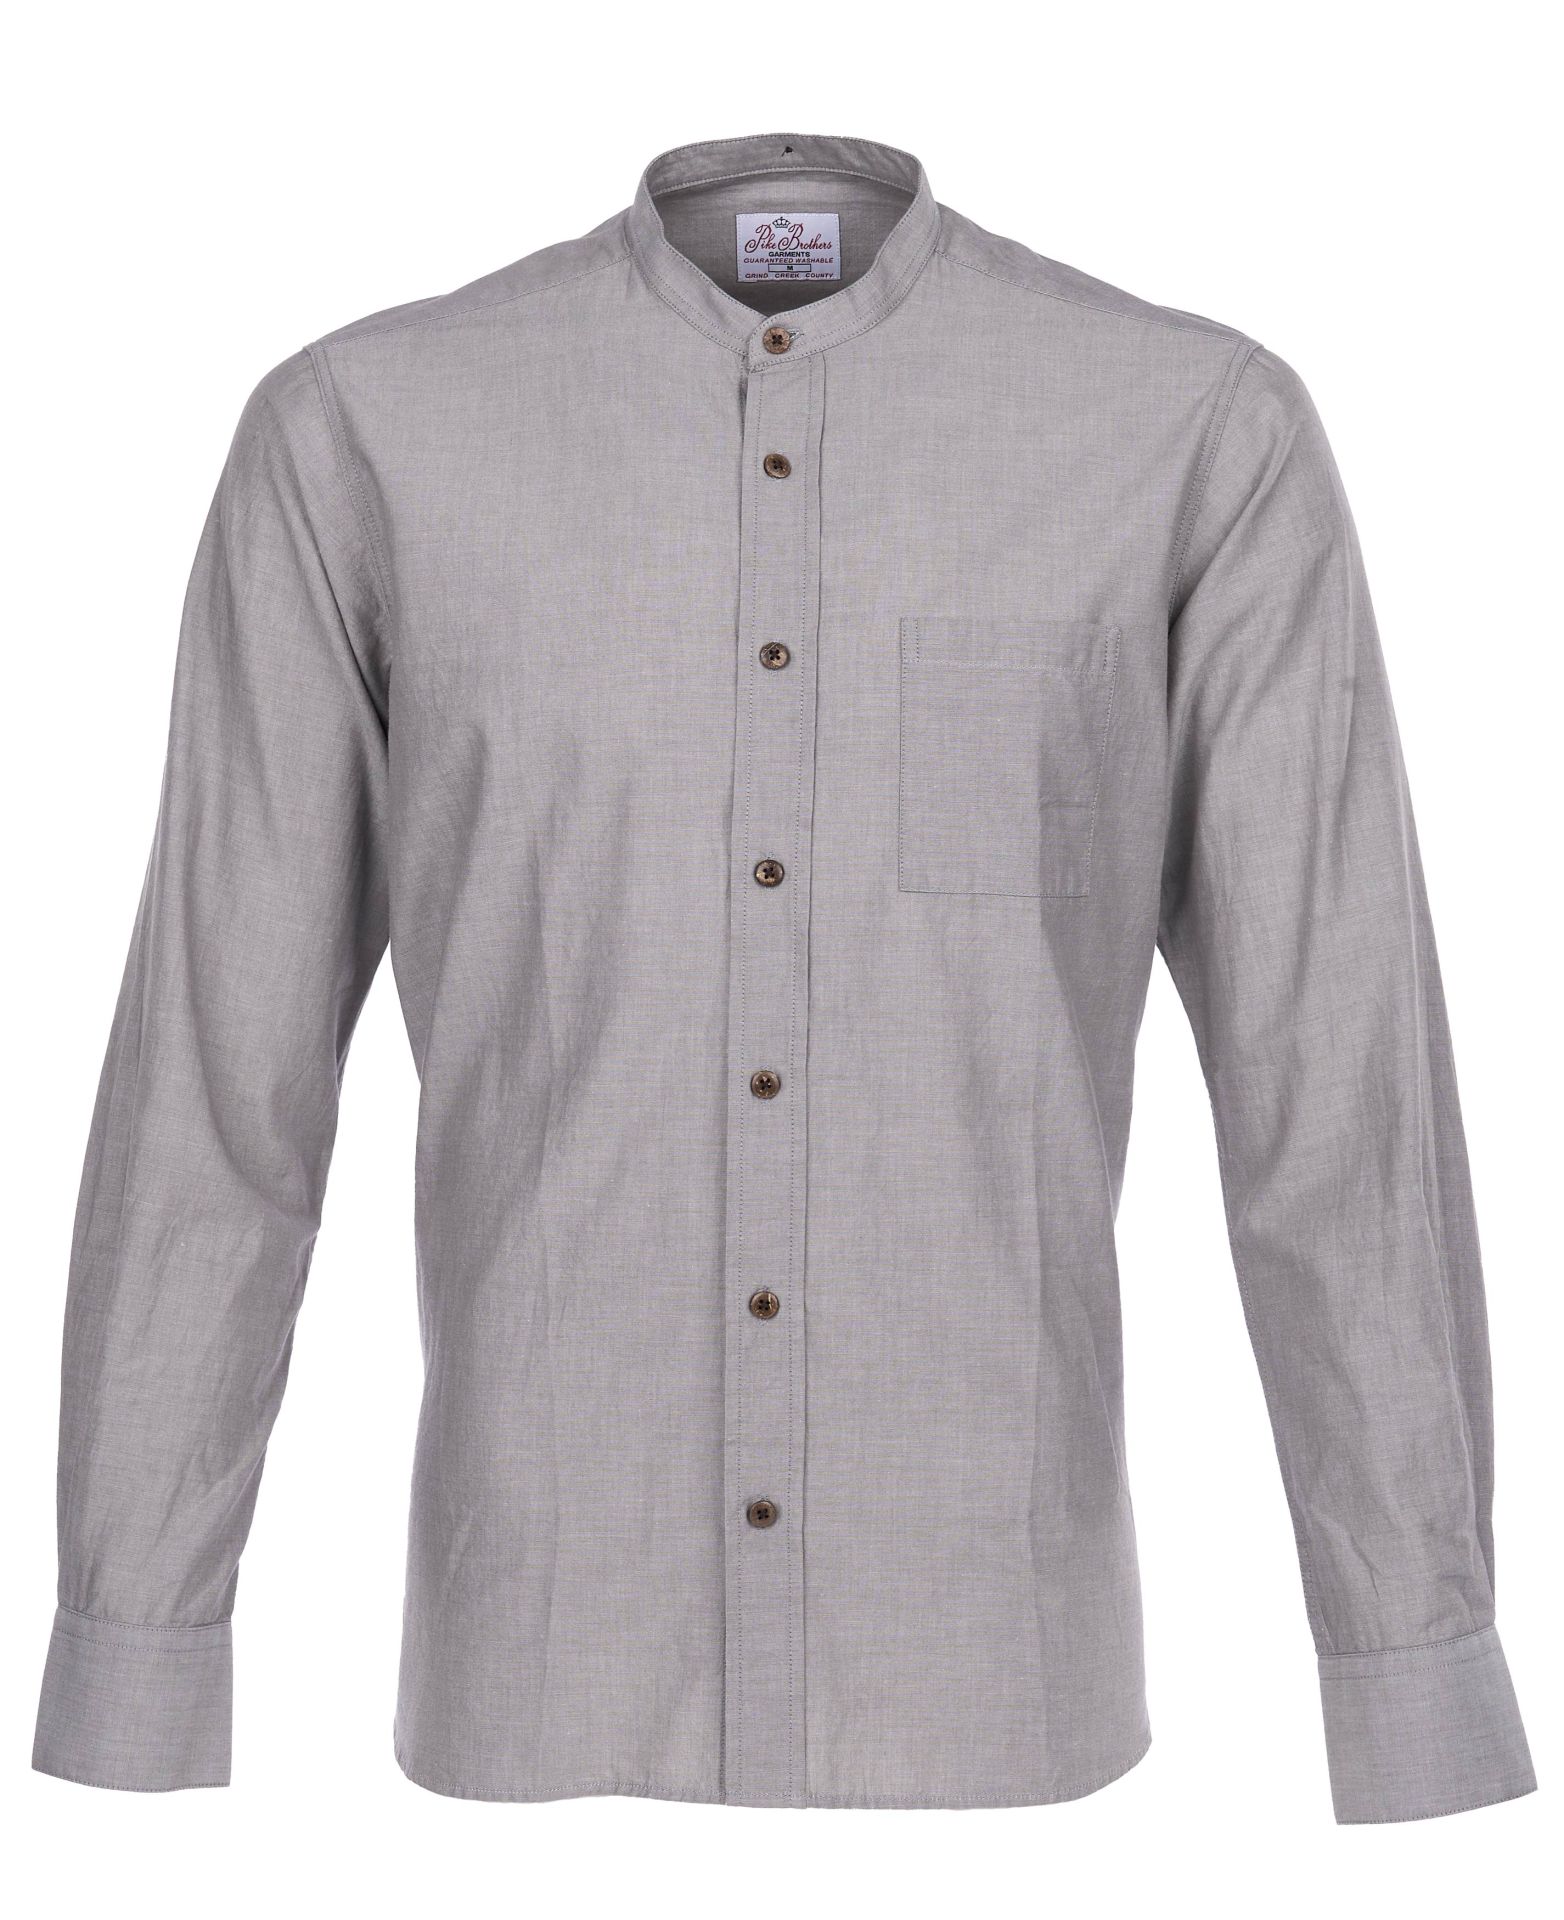 Camisa Pike 1923 Buccanoy gris, 100% algodón, talle ajustado, con botones para añadir cuello